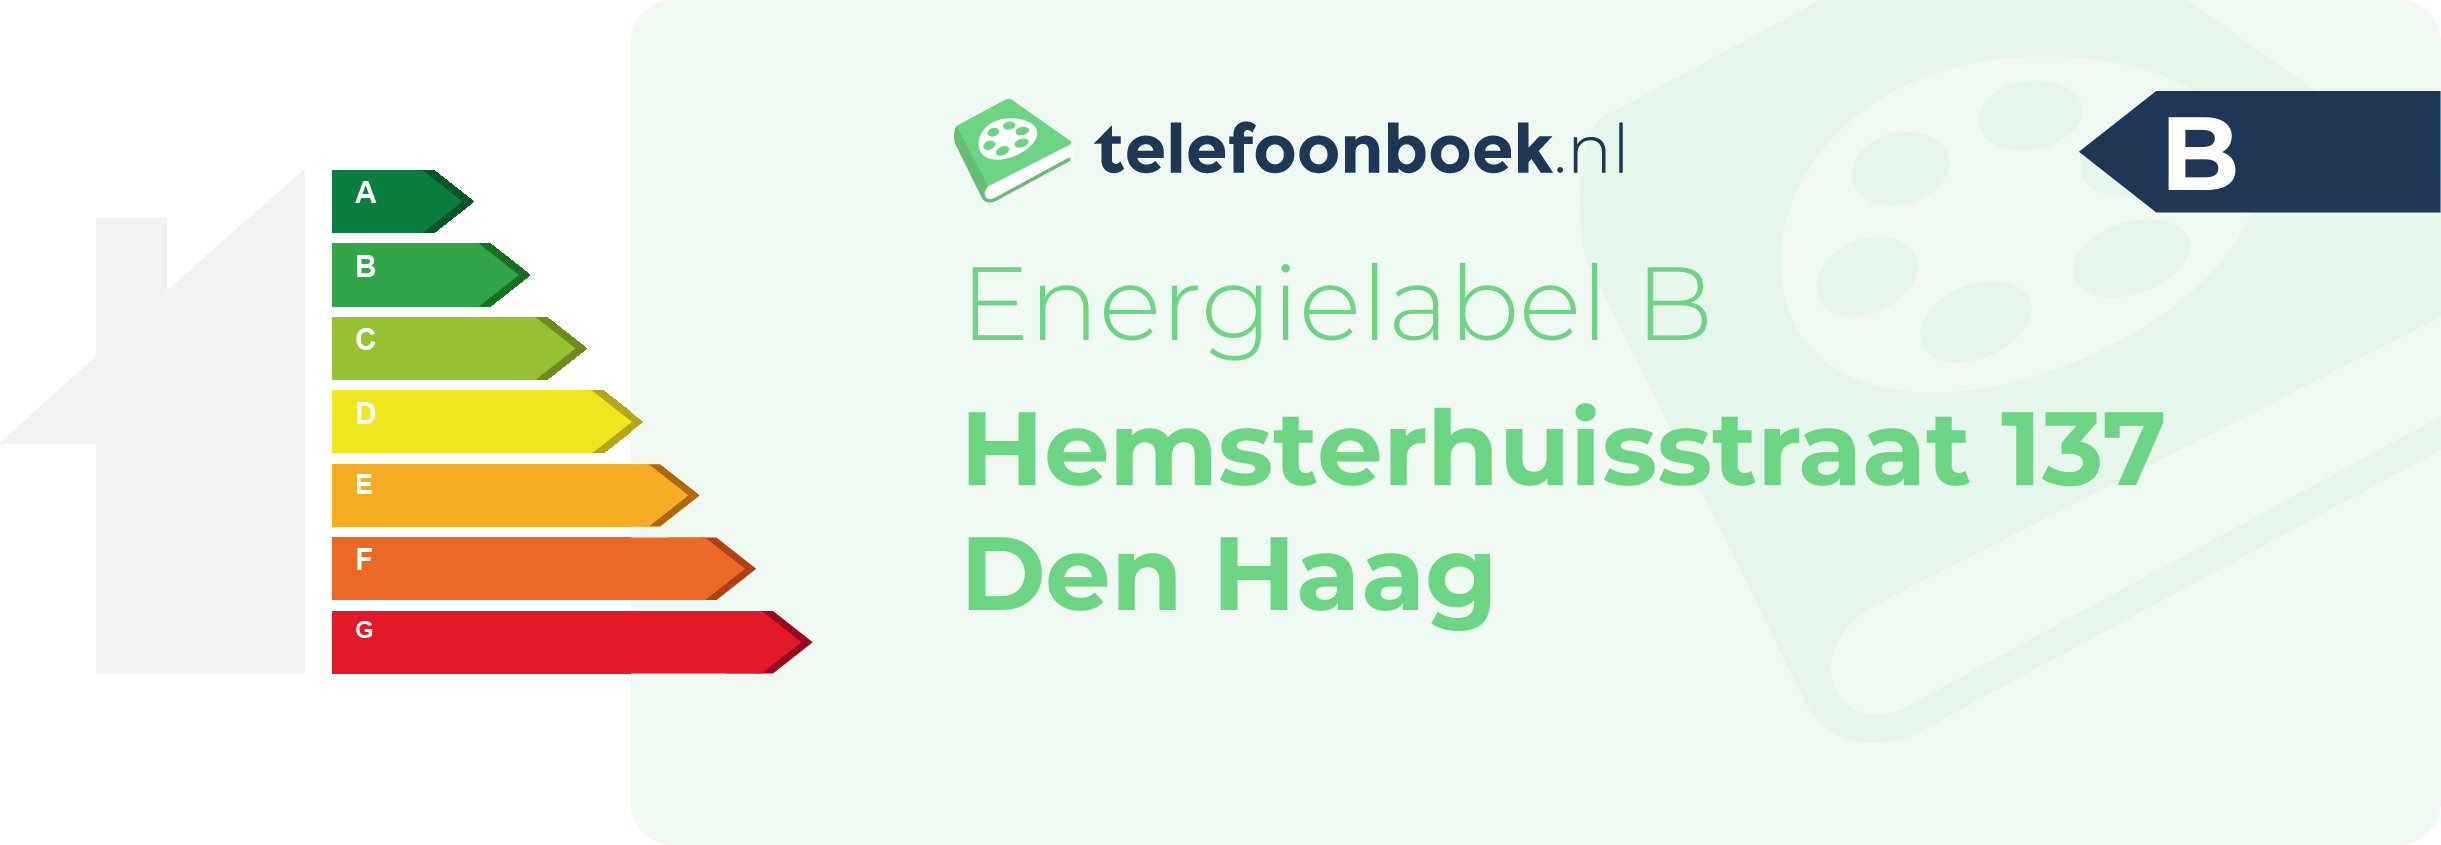 Energielabel Hemsterhuisstraat 137 Den Haag